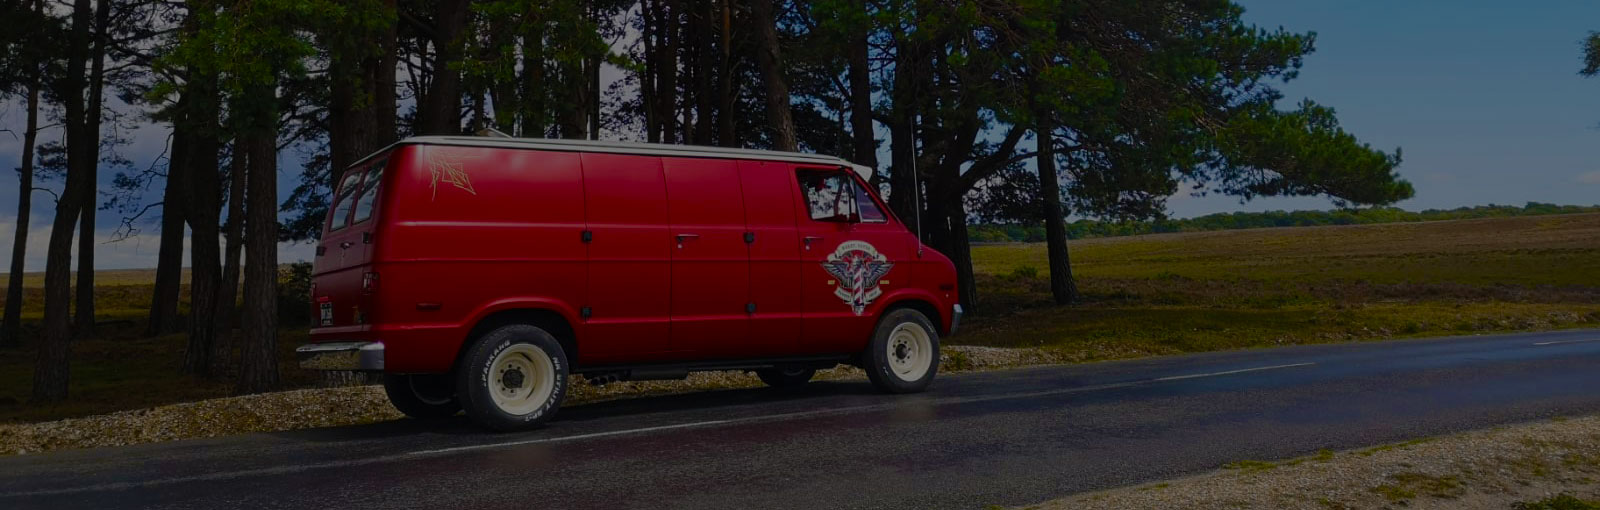 Red Camper Van With Side Door Crest In Hampshire